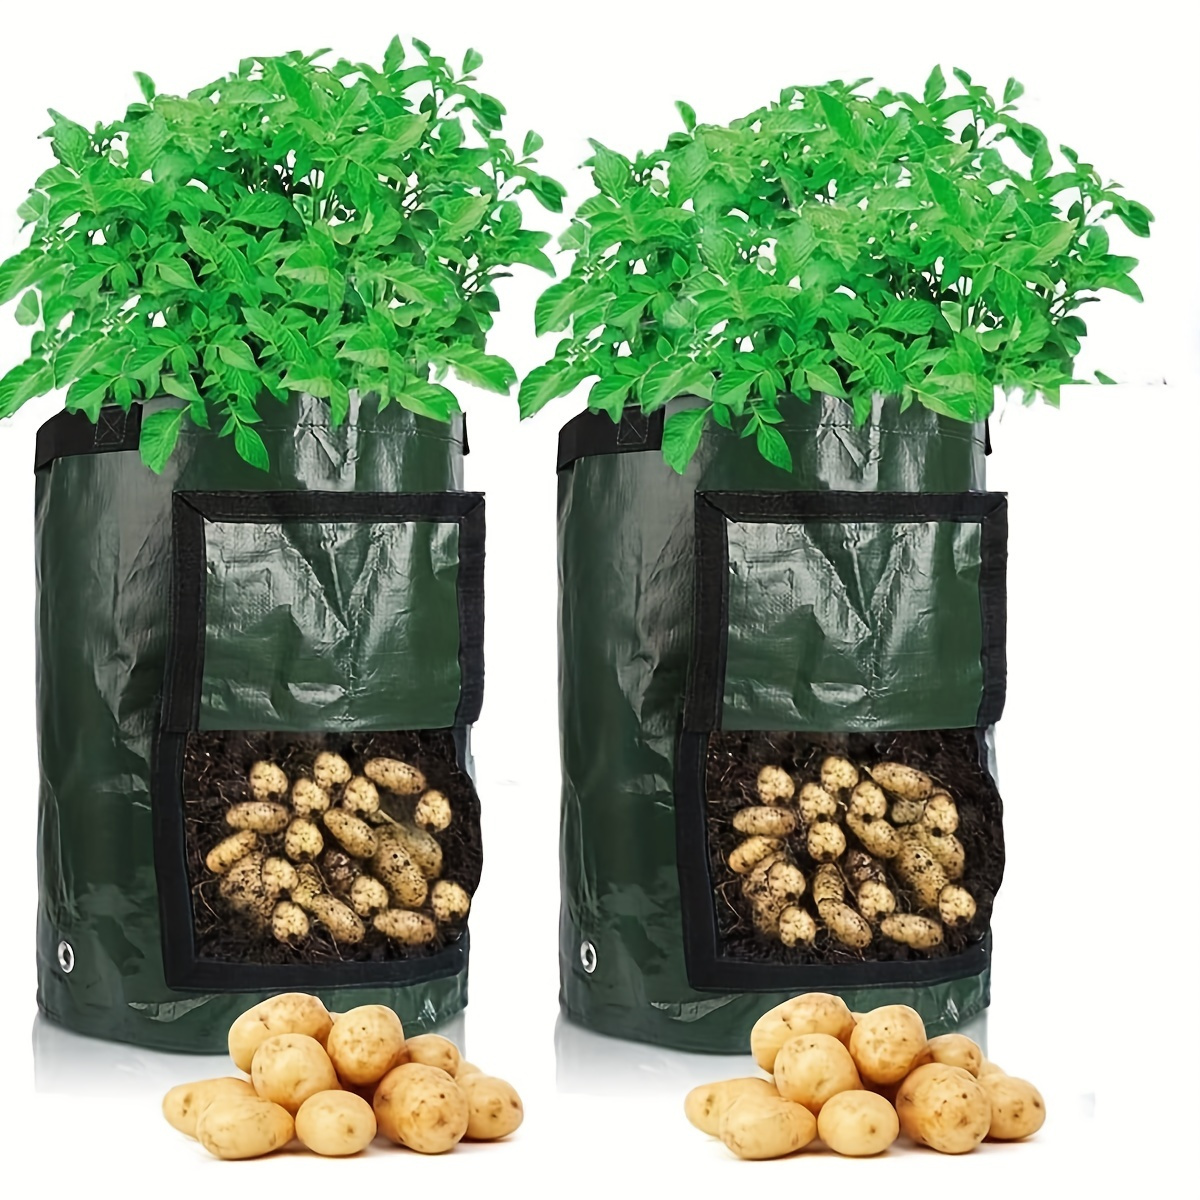 

1pc Potato Growing Bags, Durable Fabric Garden Planter Pots With Flap & Handle, Pots, Planters & Container Accessories, 7 Gallon 30x35cm,